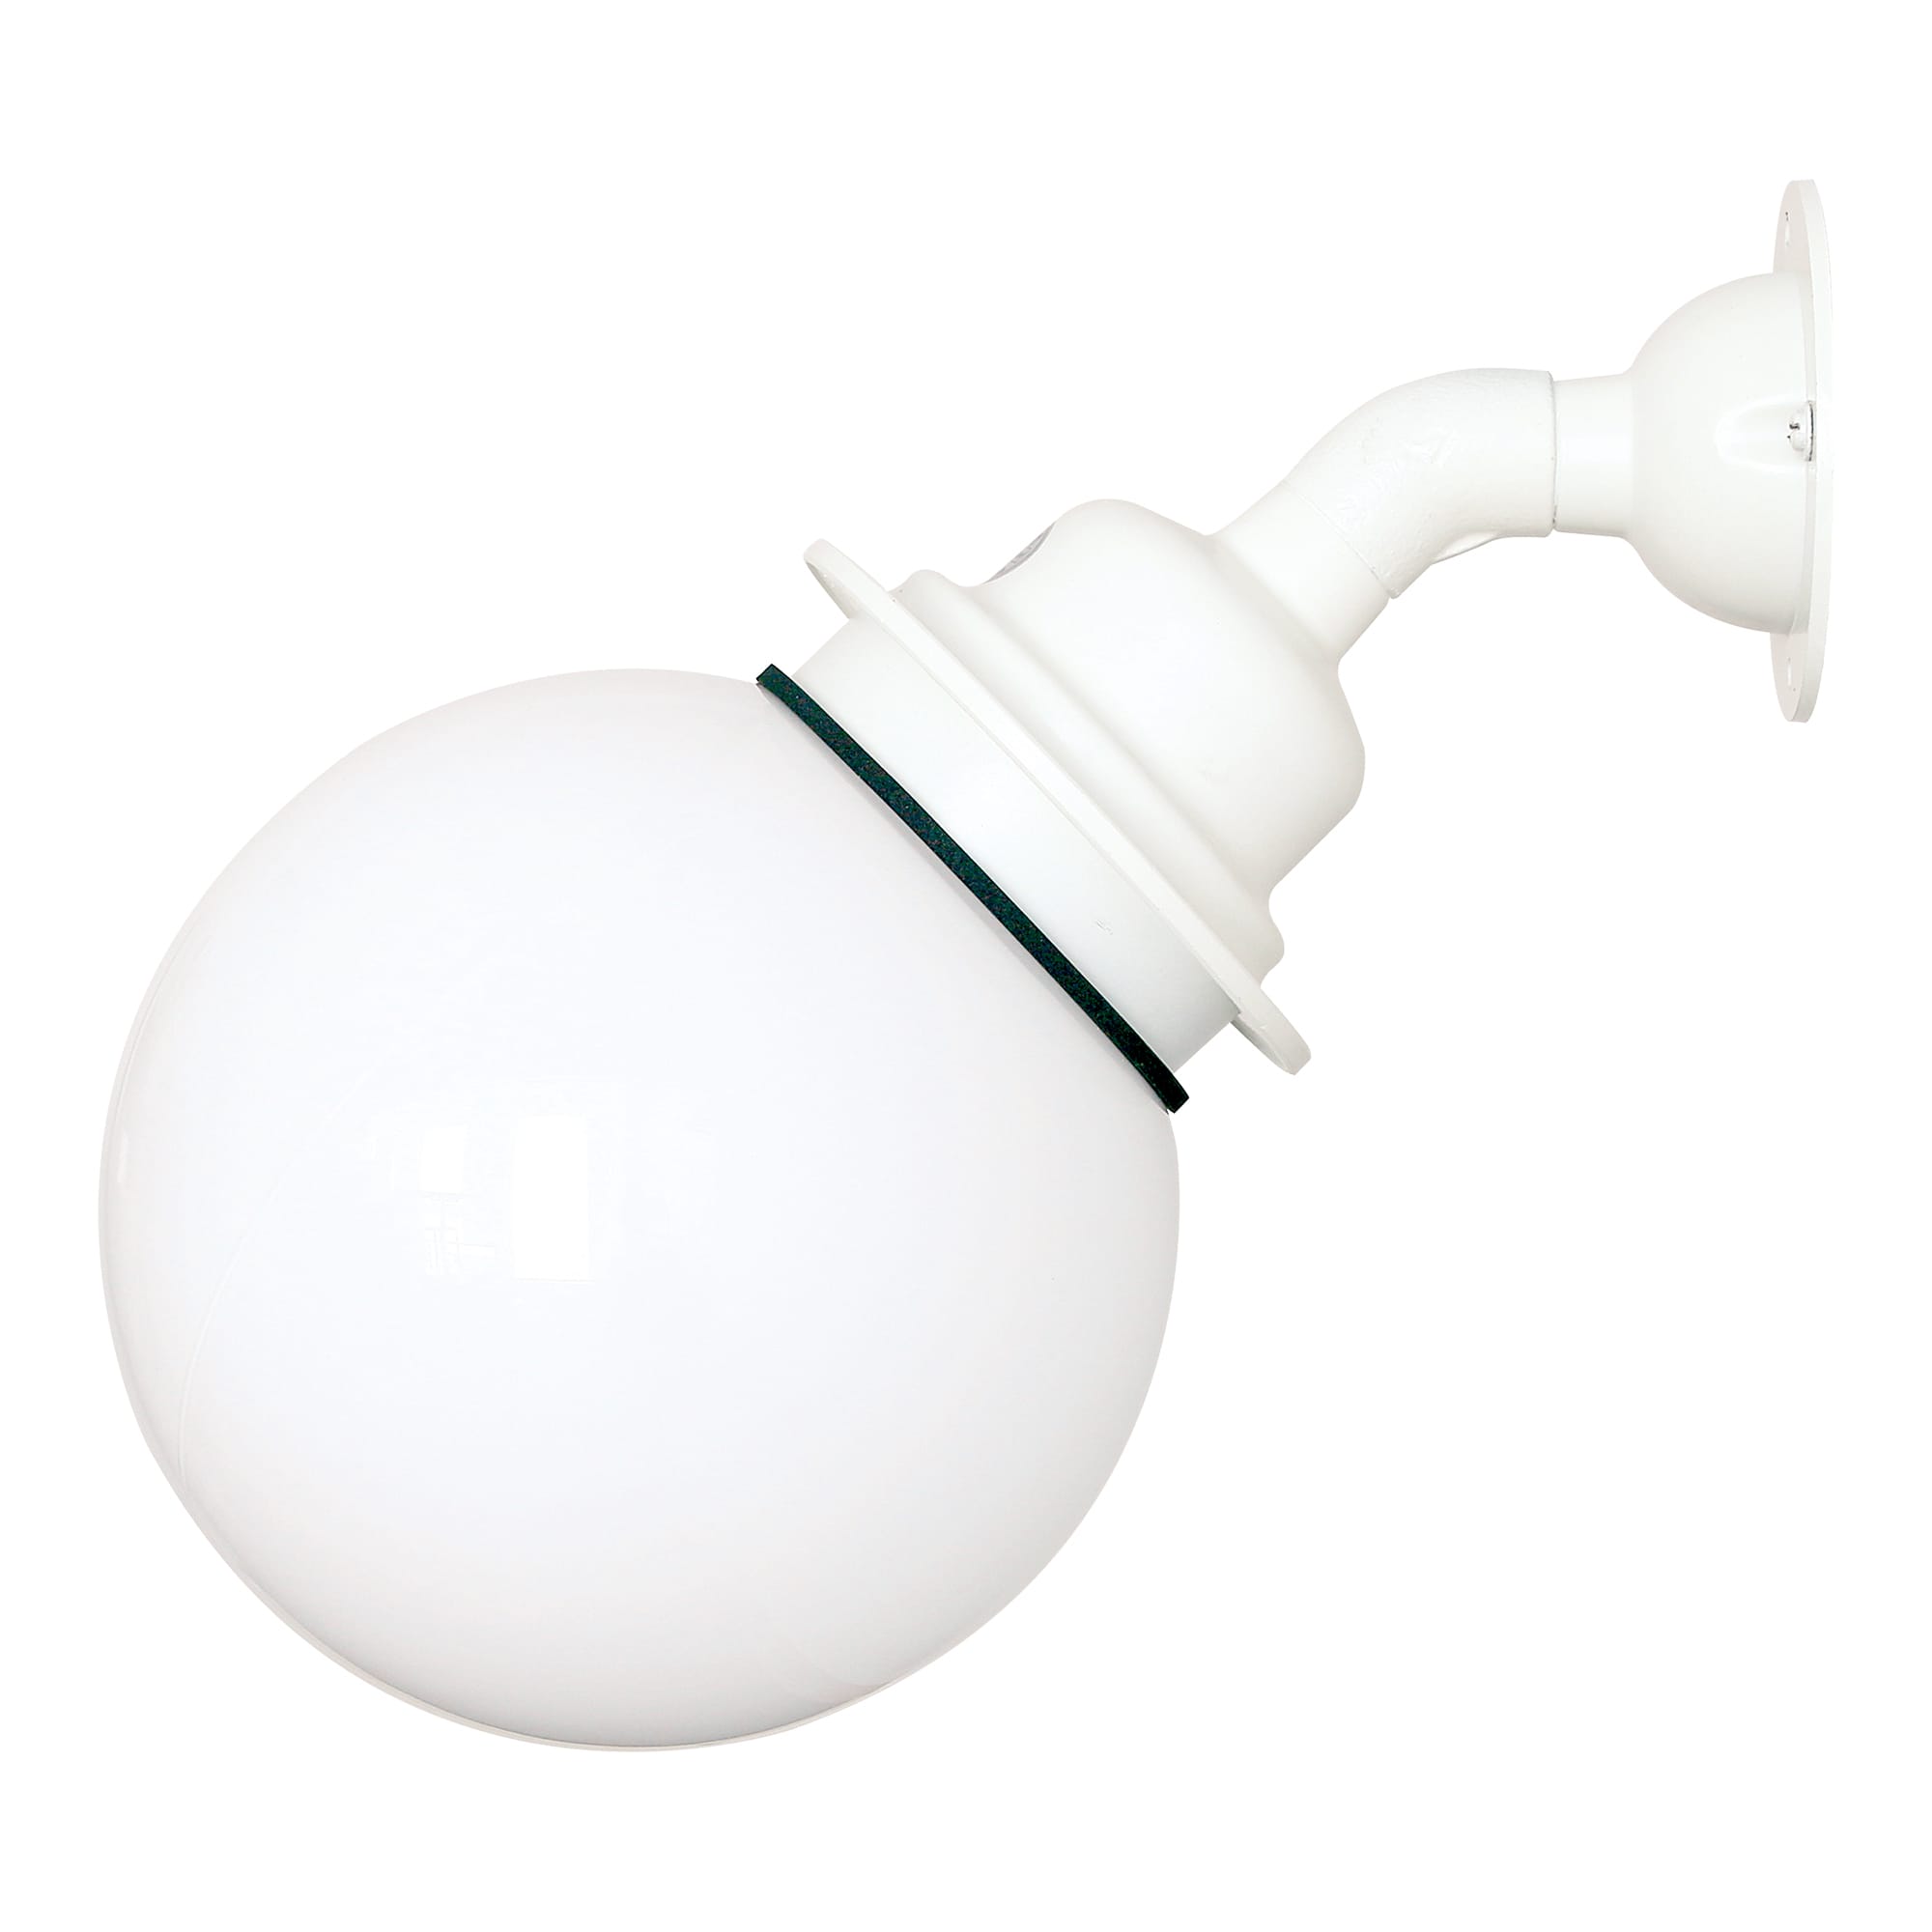 ボールアームライト 乳白×ホワイト | LT-BR011-04-G141 | 直付